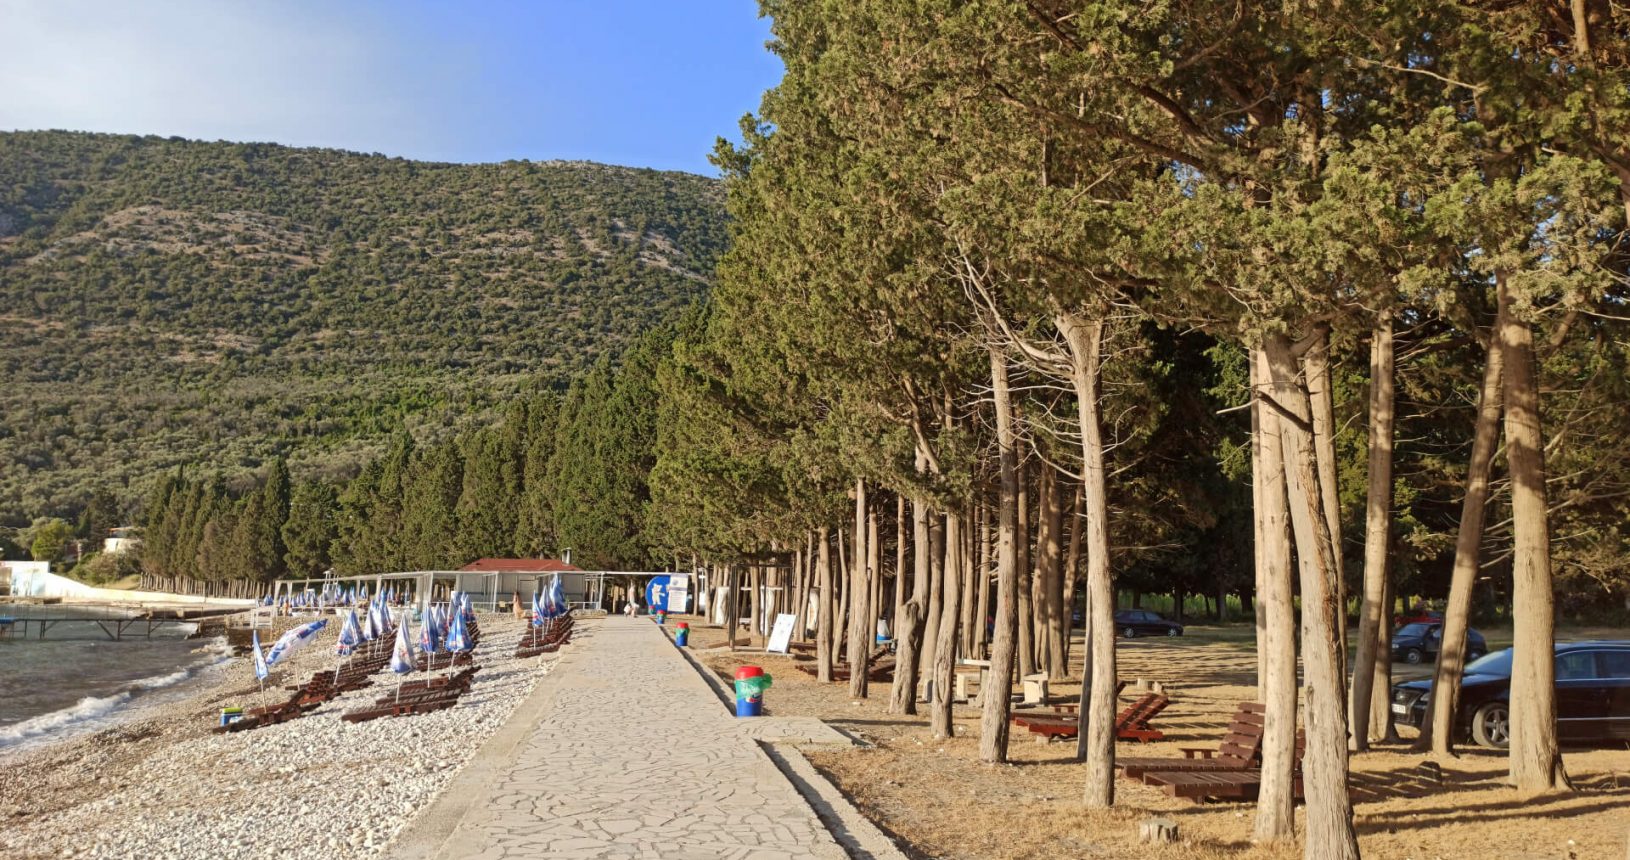 Promenade along the beach. Valdanos beach